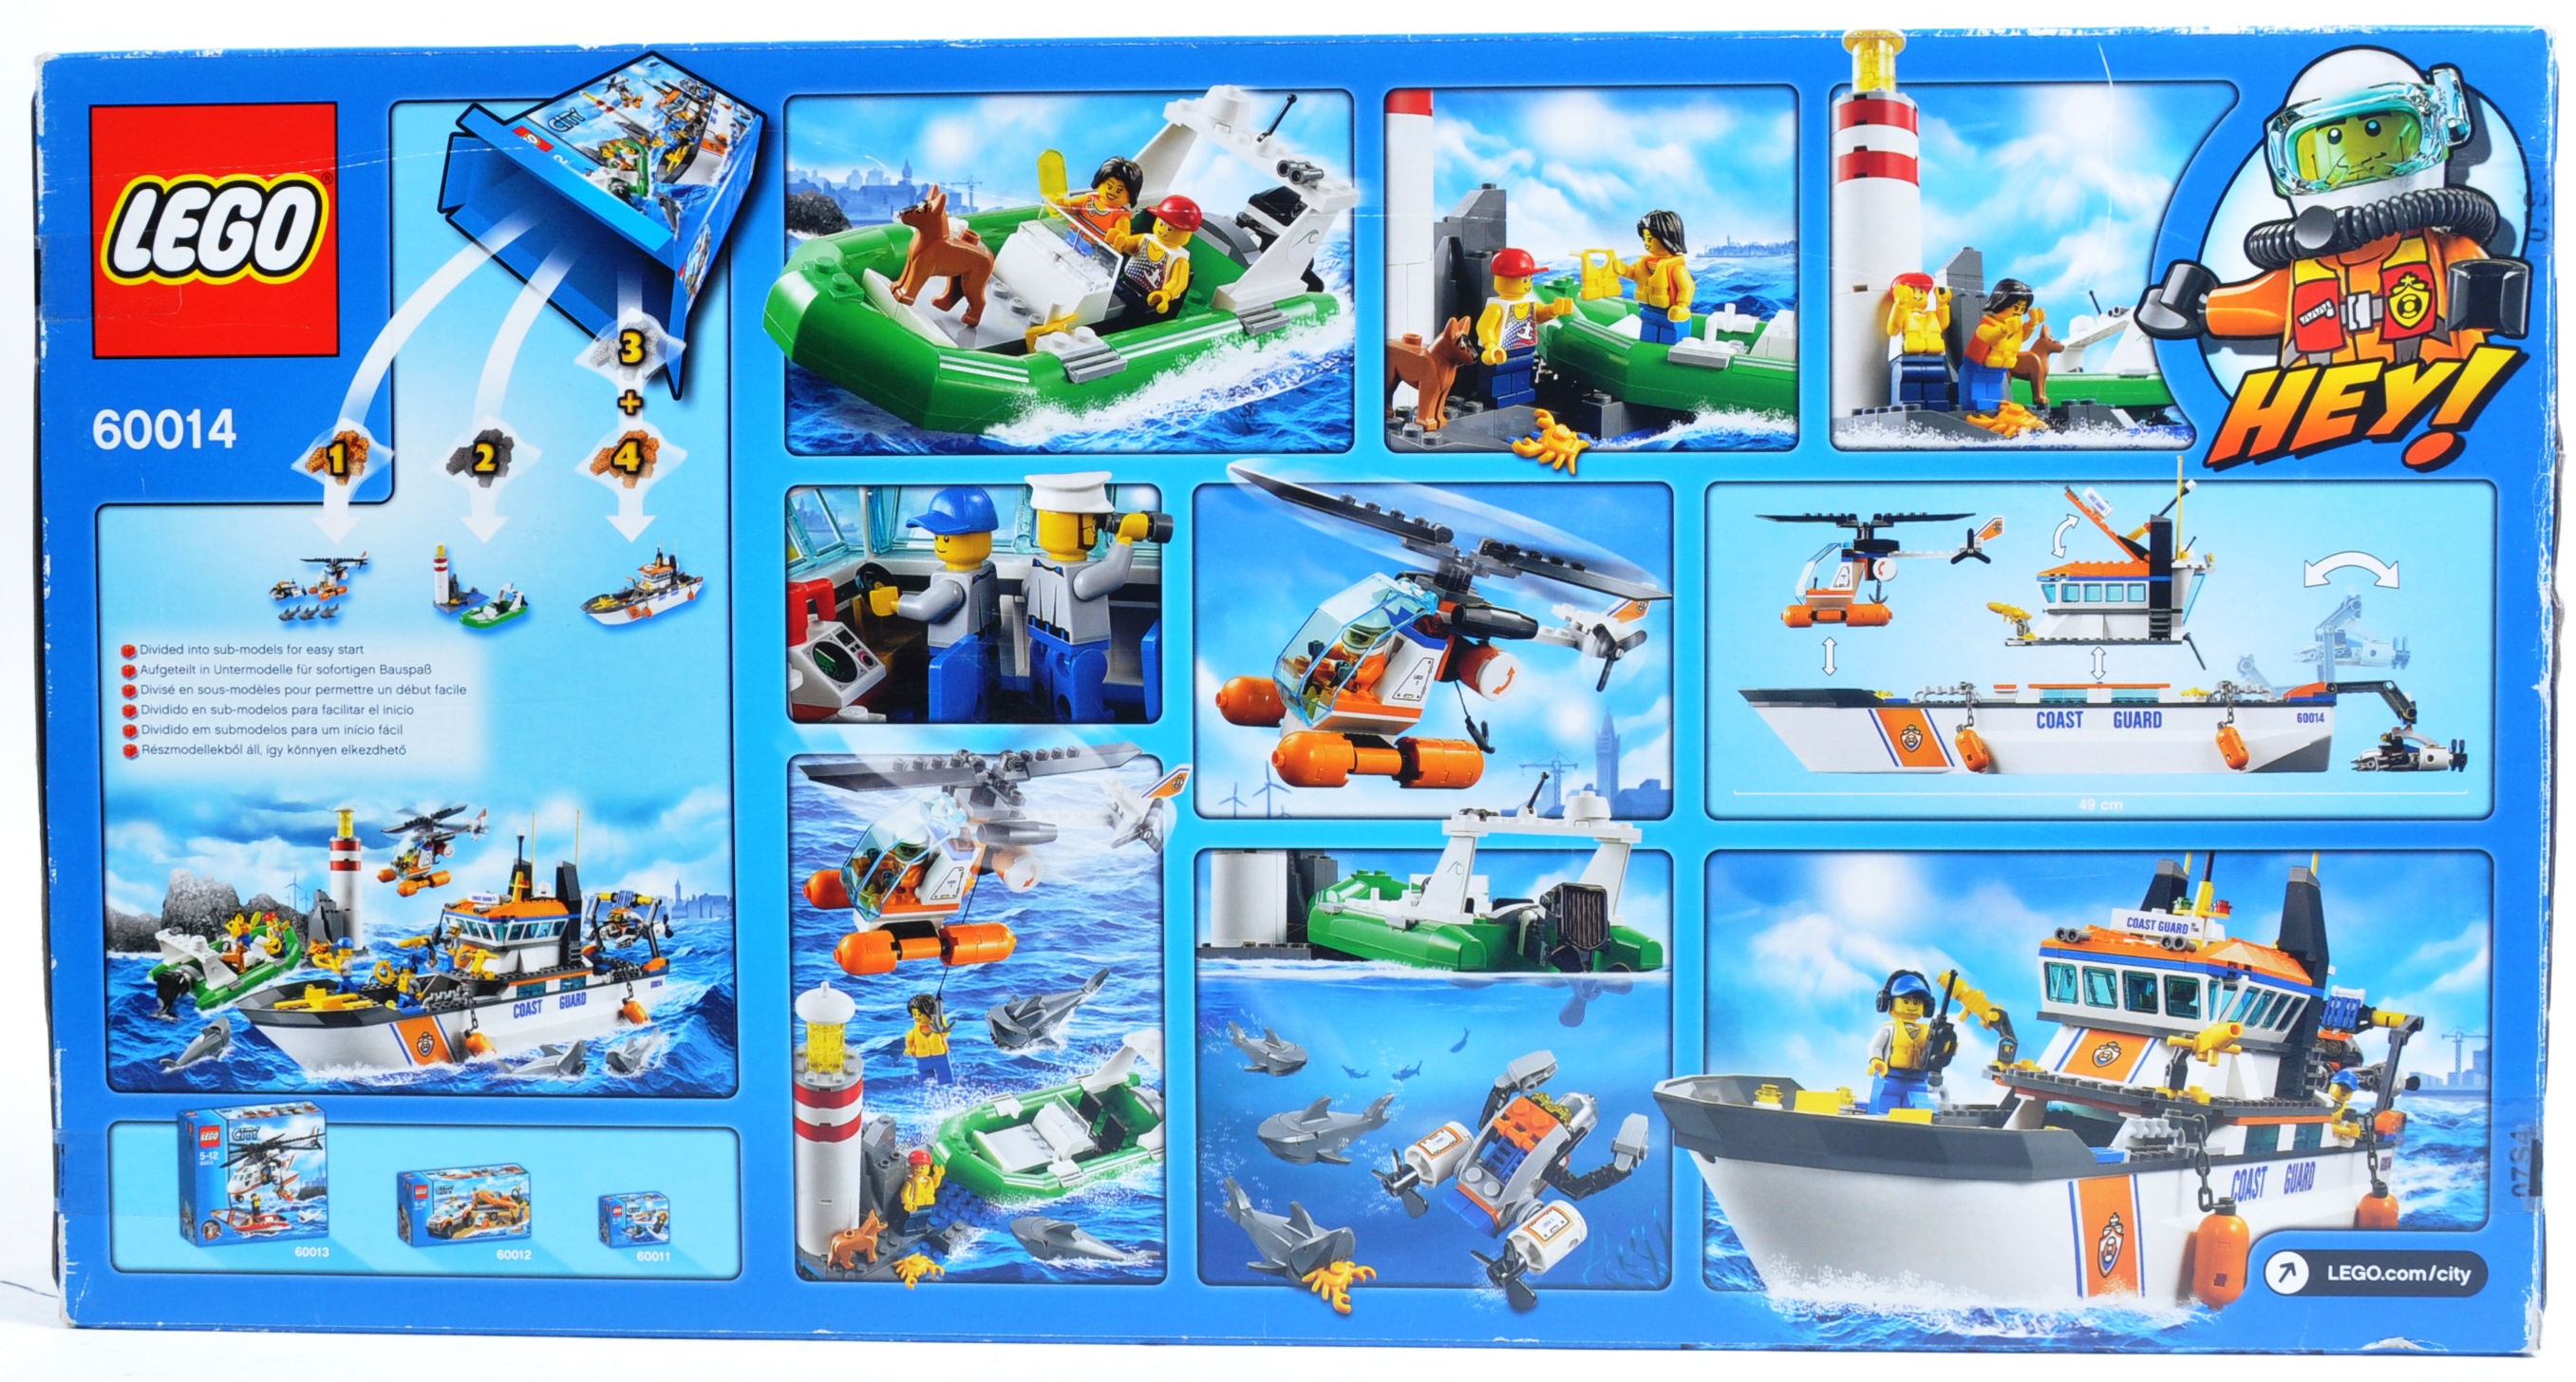 LEGO SET - LEGO CITY - 60014 - COAST GUARD PATROL - Image 2 of 4